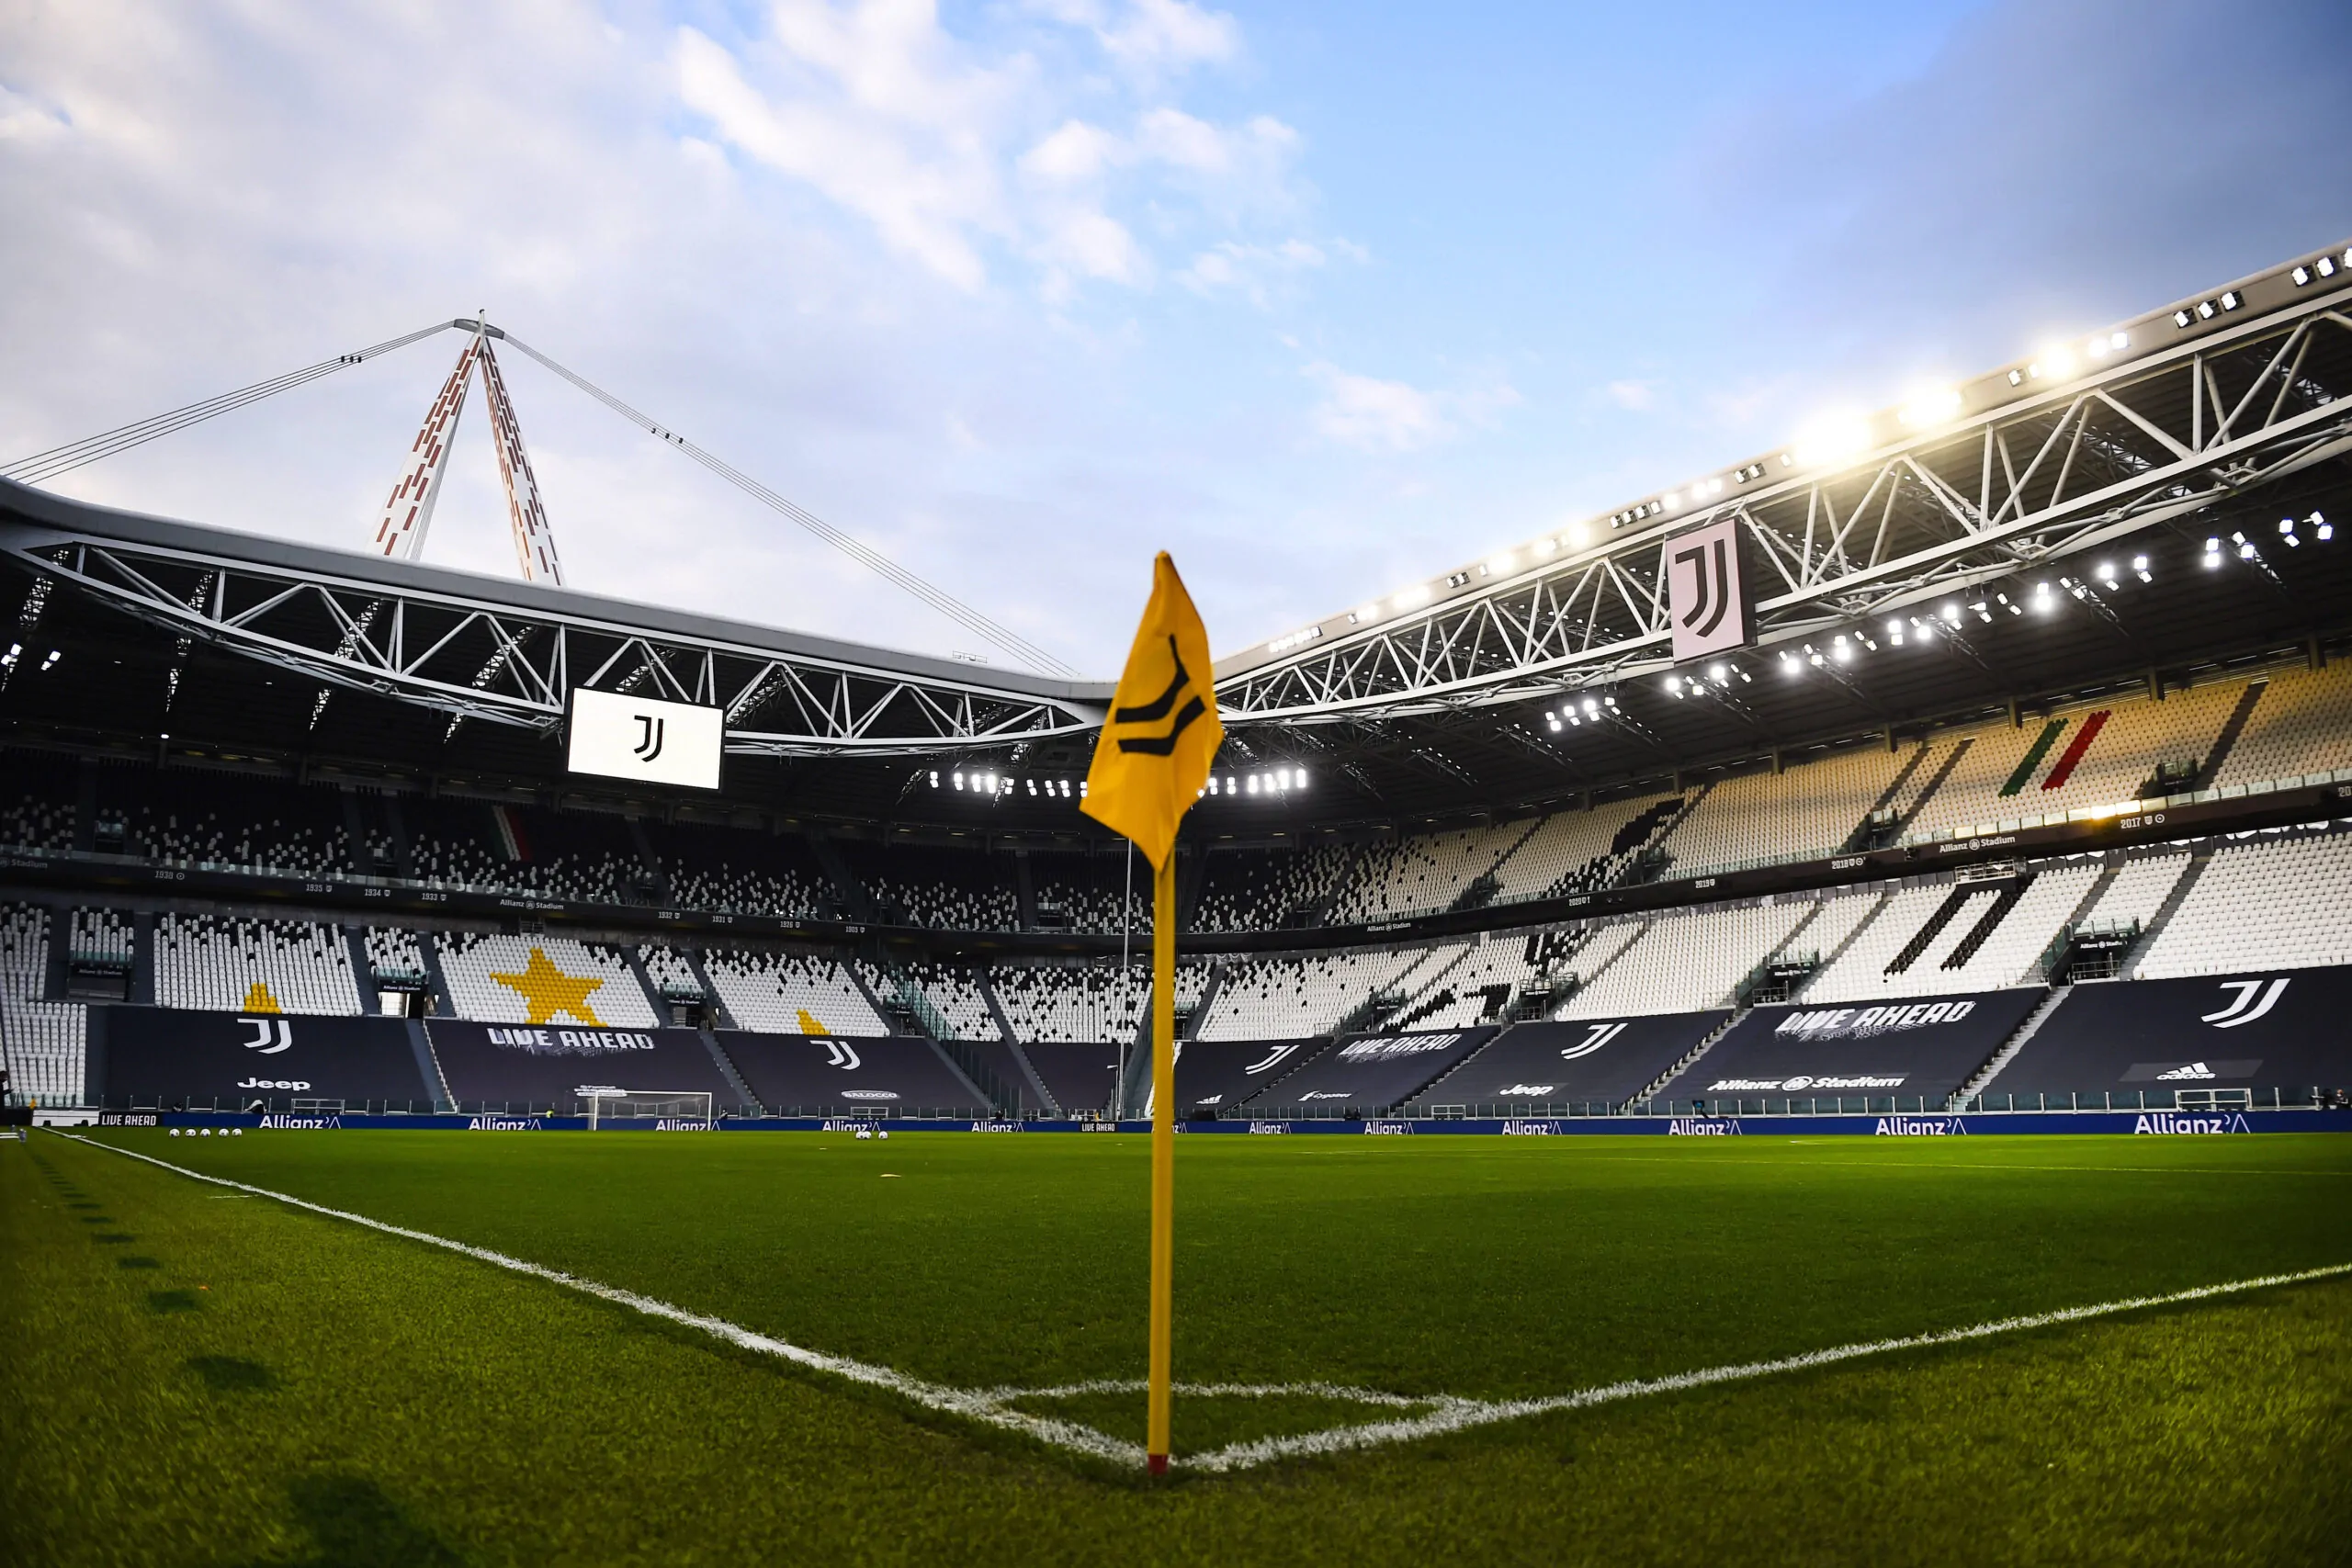 L’ironia dei tifosi: striscione contro gli acquisti “bianconeri” dell’Inter